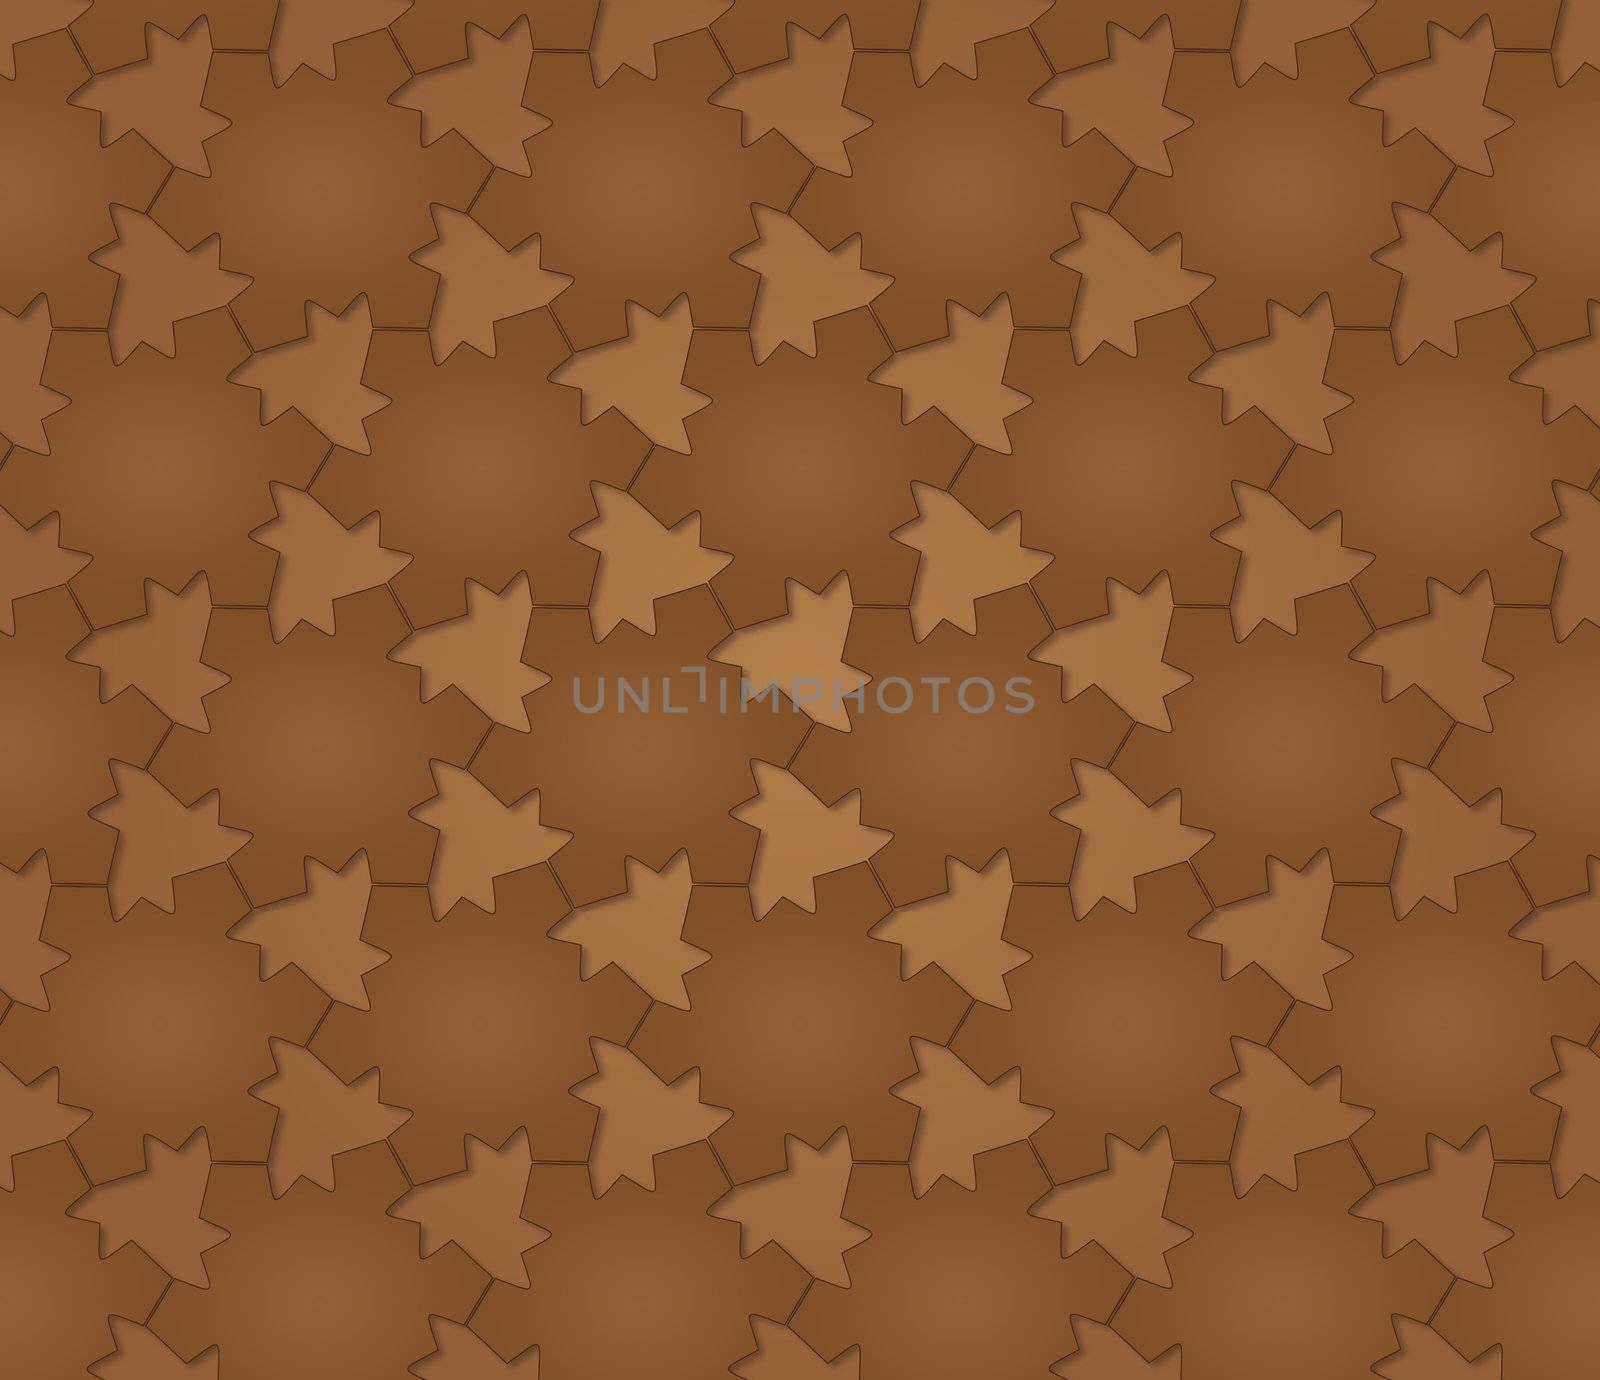 texture grouped dark brown stars on light brown background